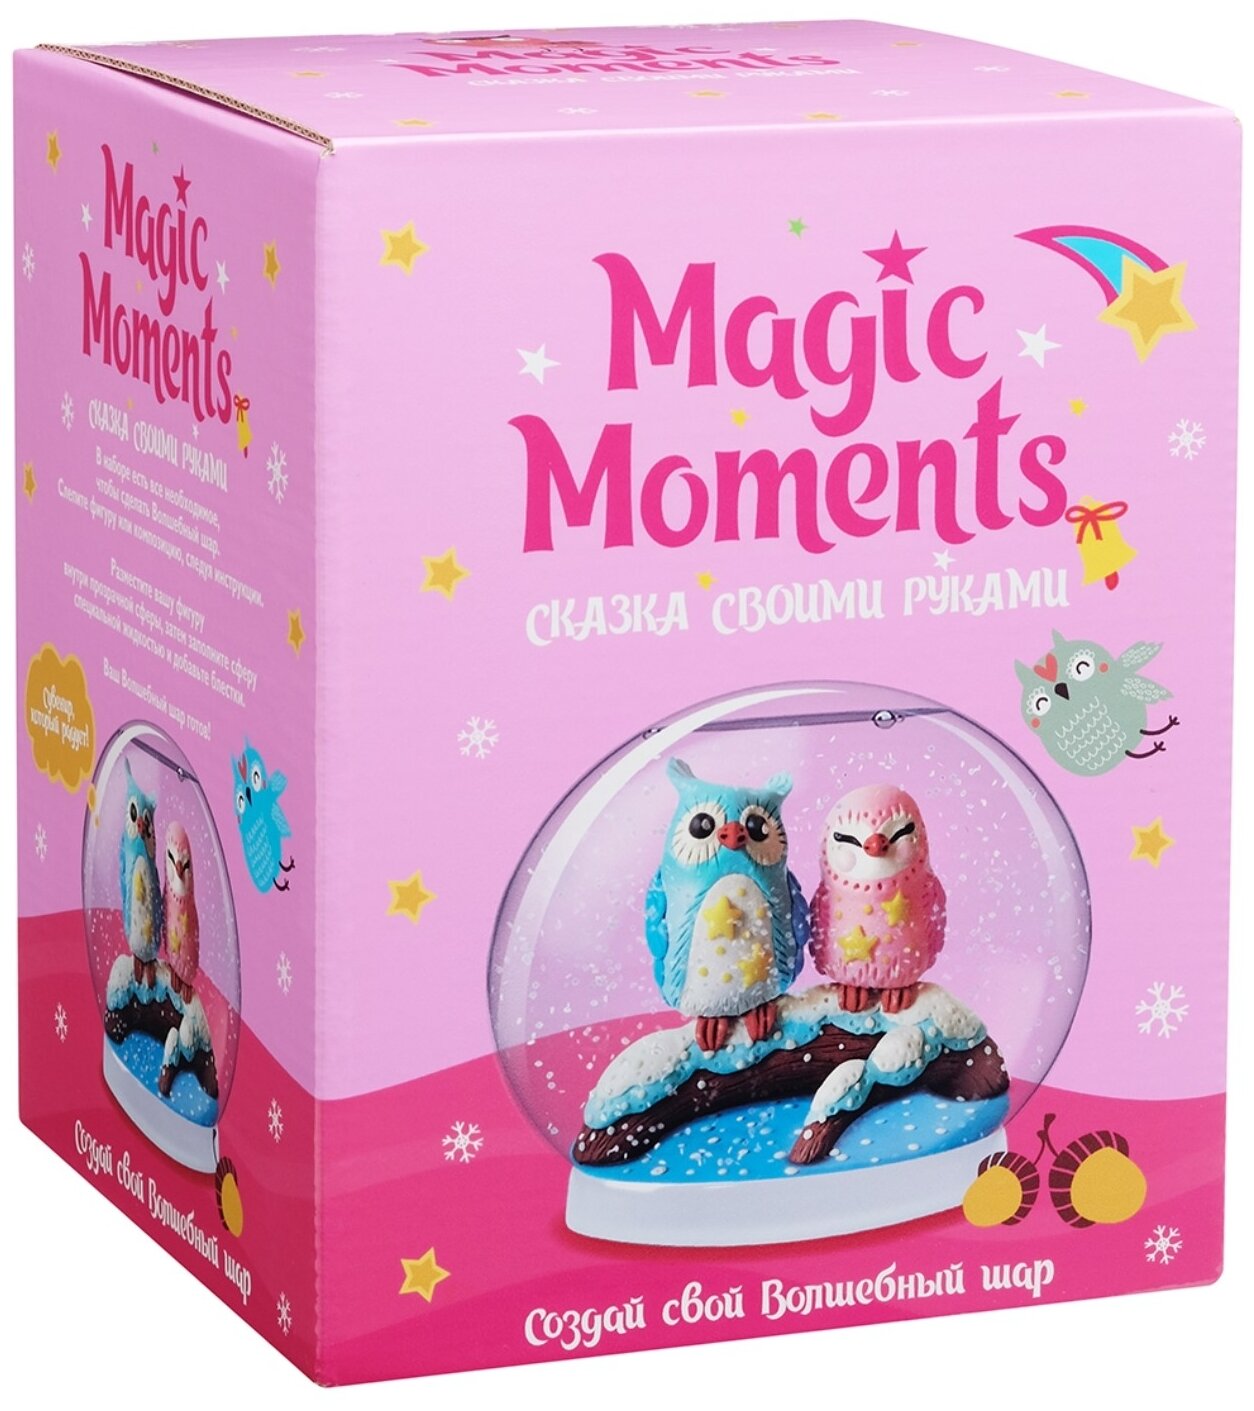 Magic Moments Волшебный шар Совушки mm-26